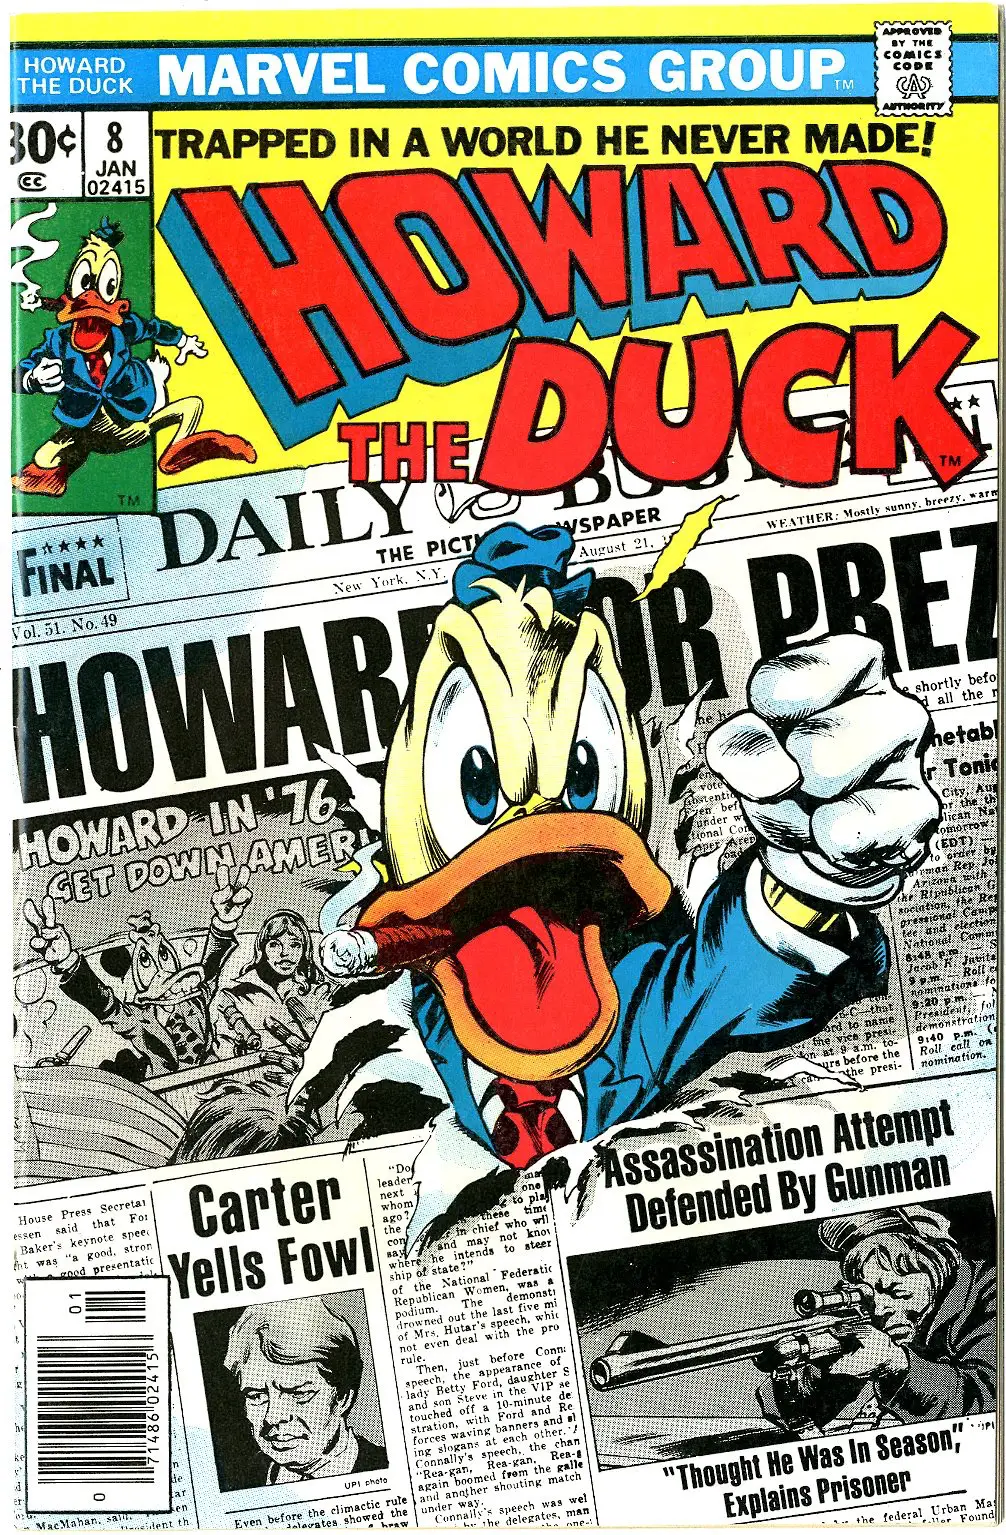 Howard the Duck Runs for President 1976